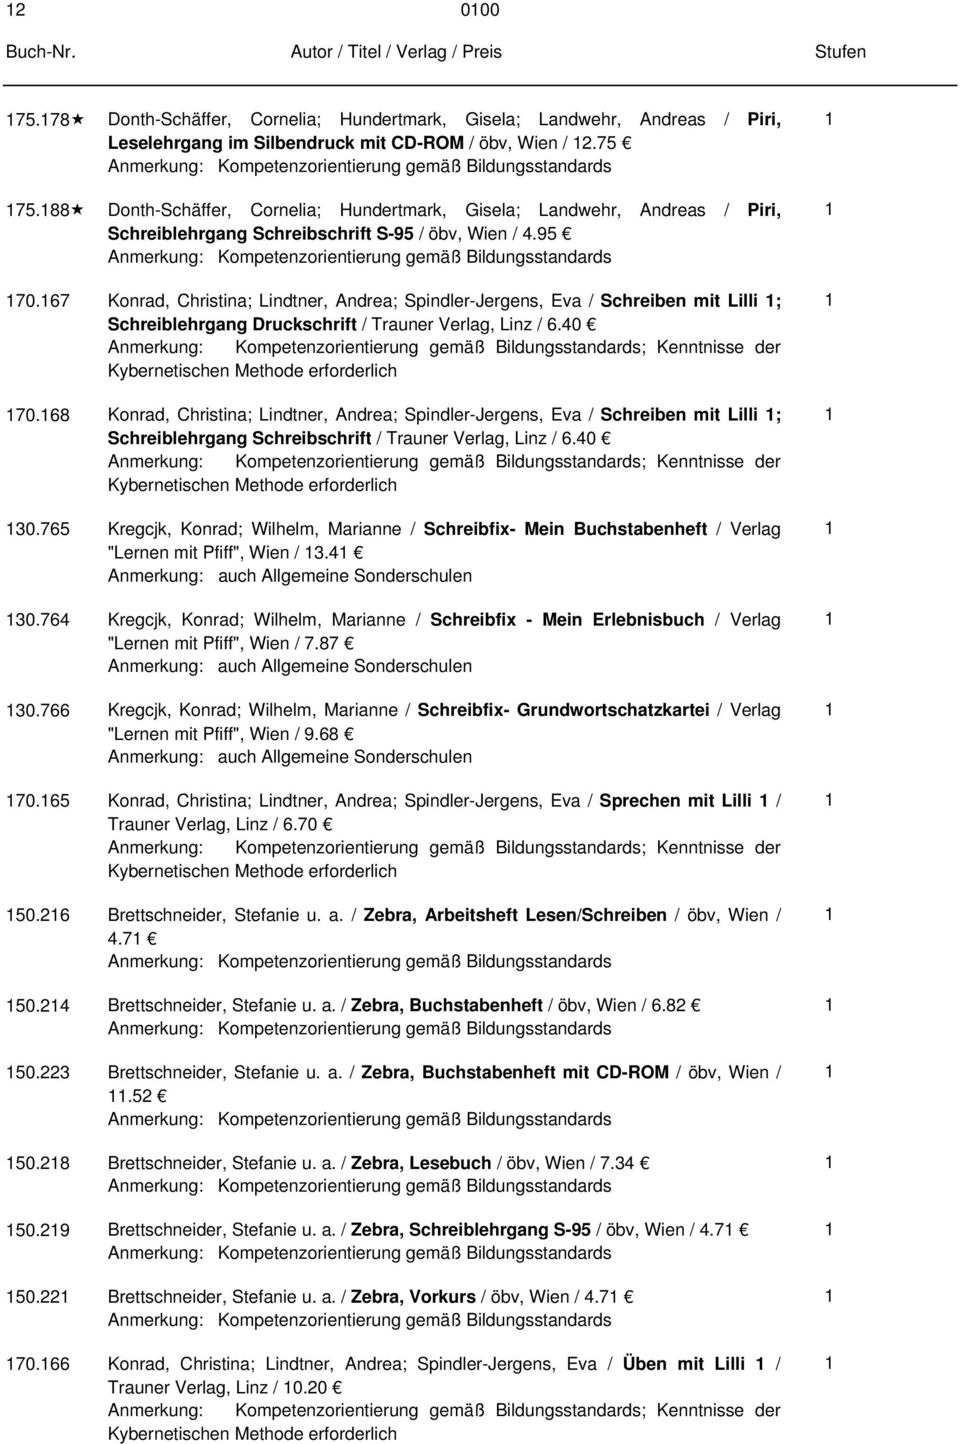 67 Konrad, Christina; Lindtner, Andrea; Spindler-Jergens, Eva / Schreiben mit Lilli ; Schreiblehrgang Druckschrift / Trauner Verlag, Linz / 6.0 ; Kenntnisse der Kybernetischen Methode erforderlich 70.